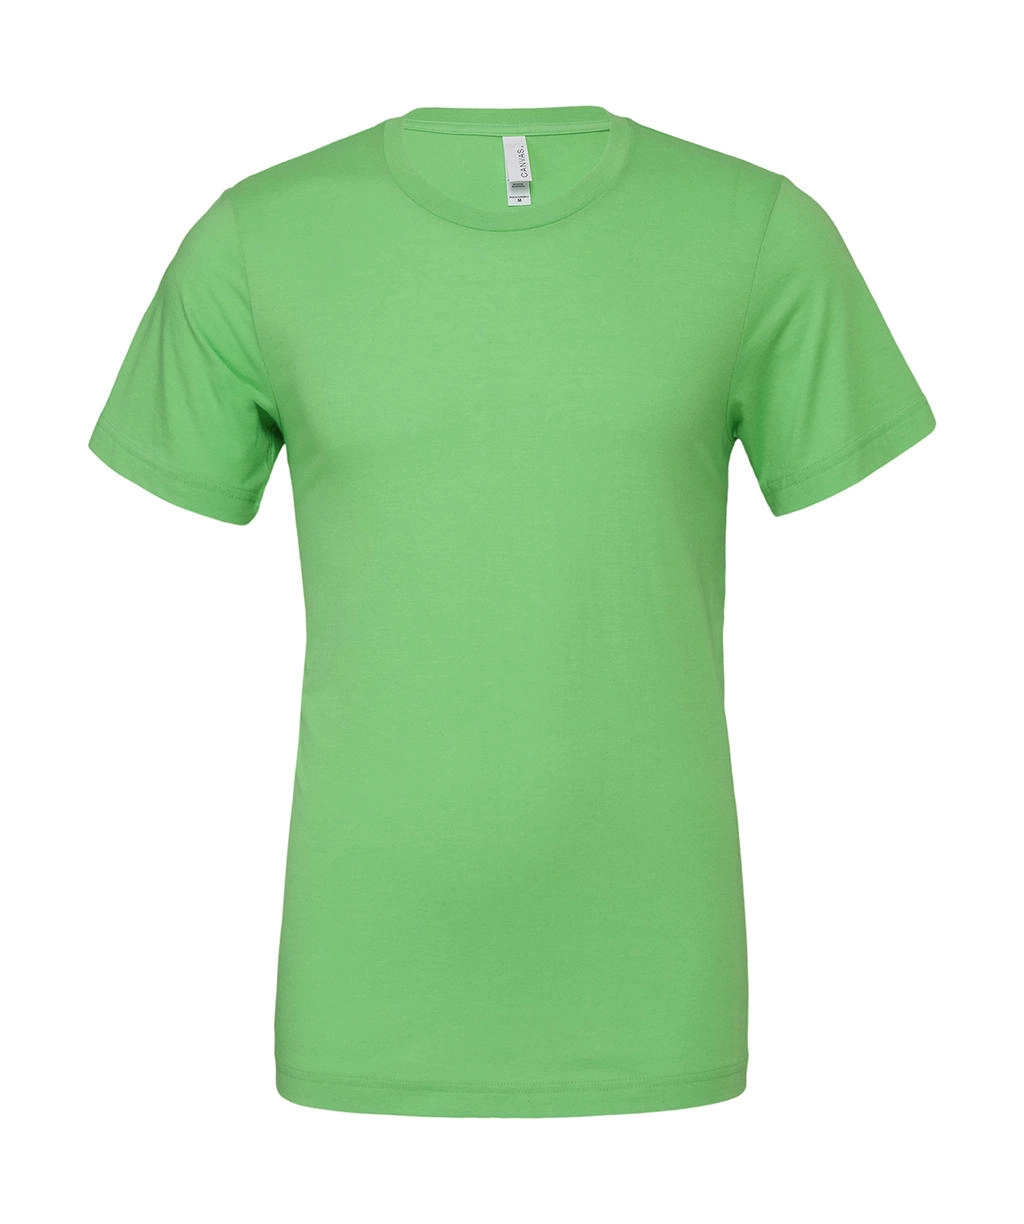 Unisex Poly-Cotton T-Shirt zum Besticken und Bedrucken in der Farbe Neon Green mit Ihren Logo, Schriftzug oder Motiv.